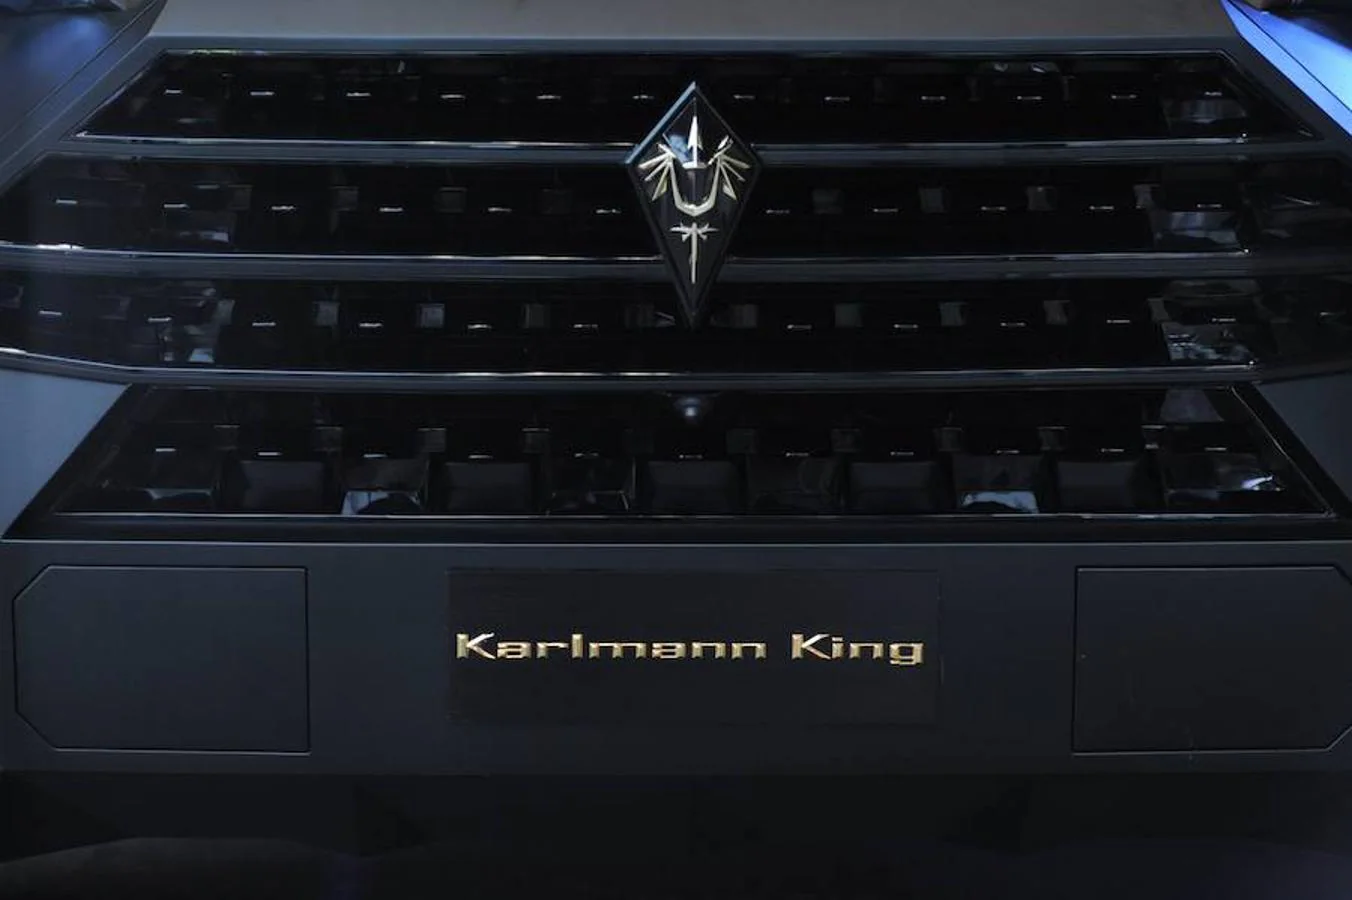 Este es el Karlmann King SUV, considerado el SUV (Sport Utility Vehicle) más exclusivo y caro (entre 1,6 y 3,4 millones de euros) del mundo. Este tipo de coches también se denominan vehículos deportivos compactos. Fabricado por la compañía china IAT, tiene una pantalla de 45 pulgadas, iPads y Play Station 4 incorporados y almacenaje de botellas de champán. Interior de limusina y exterior de carro militar. Está basado en un gran pick-up de Ford, con 6 metros de largo y 2,5 de ancho.